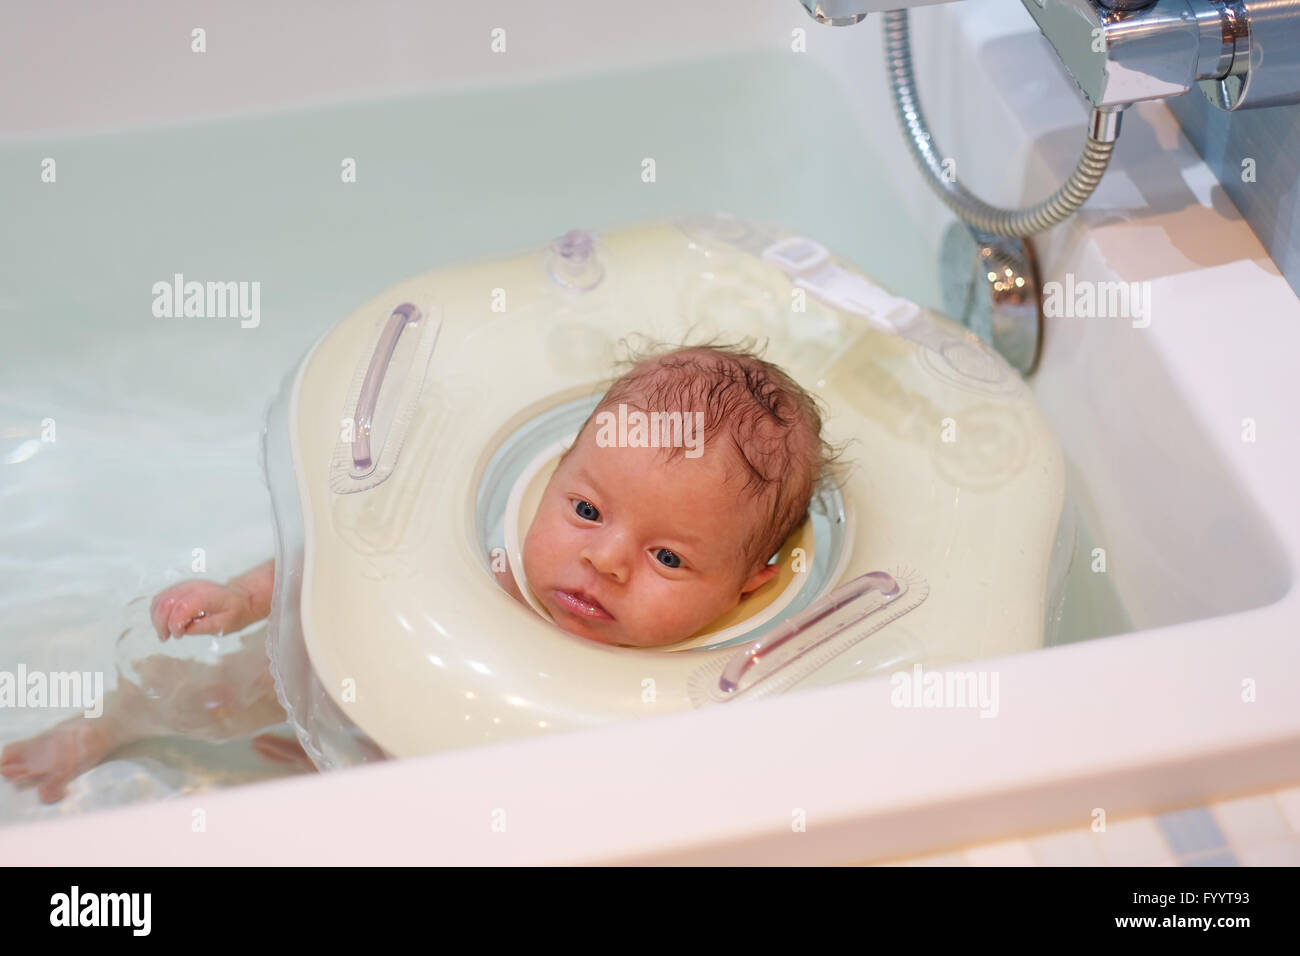 Babyschwimmen mit Hals Schwimmring Stockfotografie - Alamy